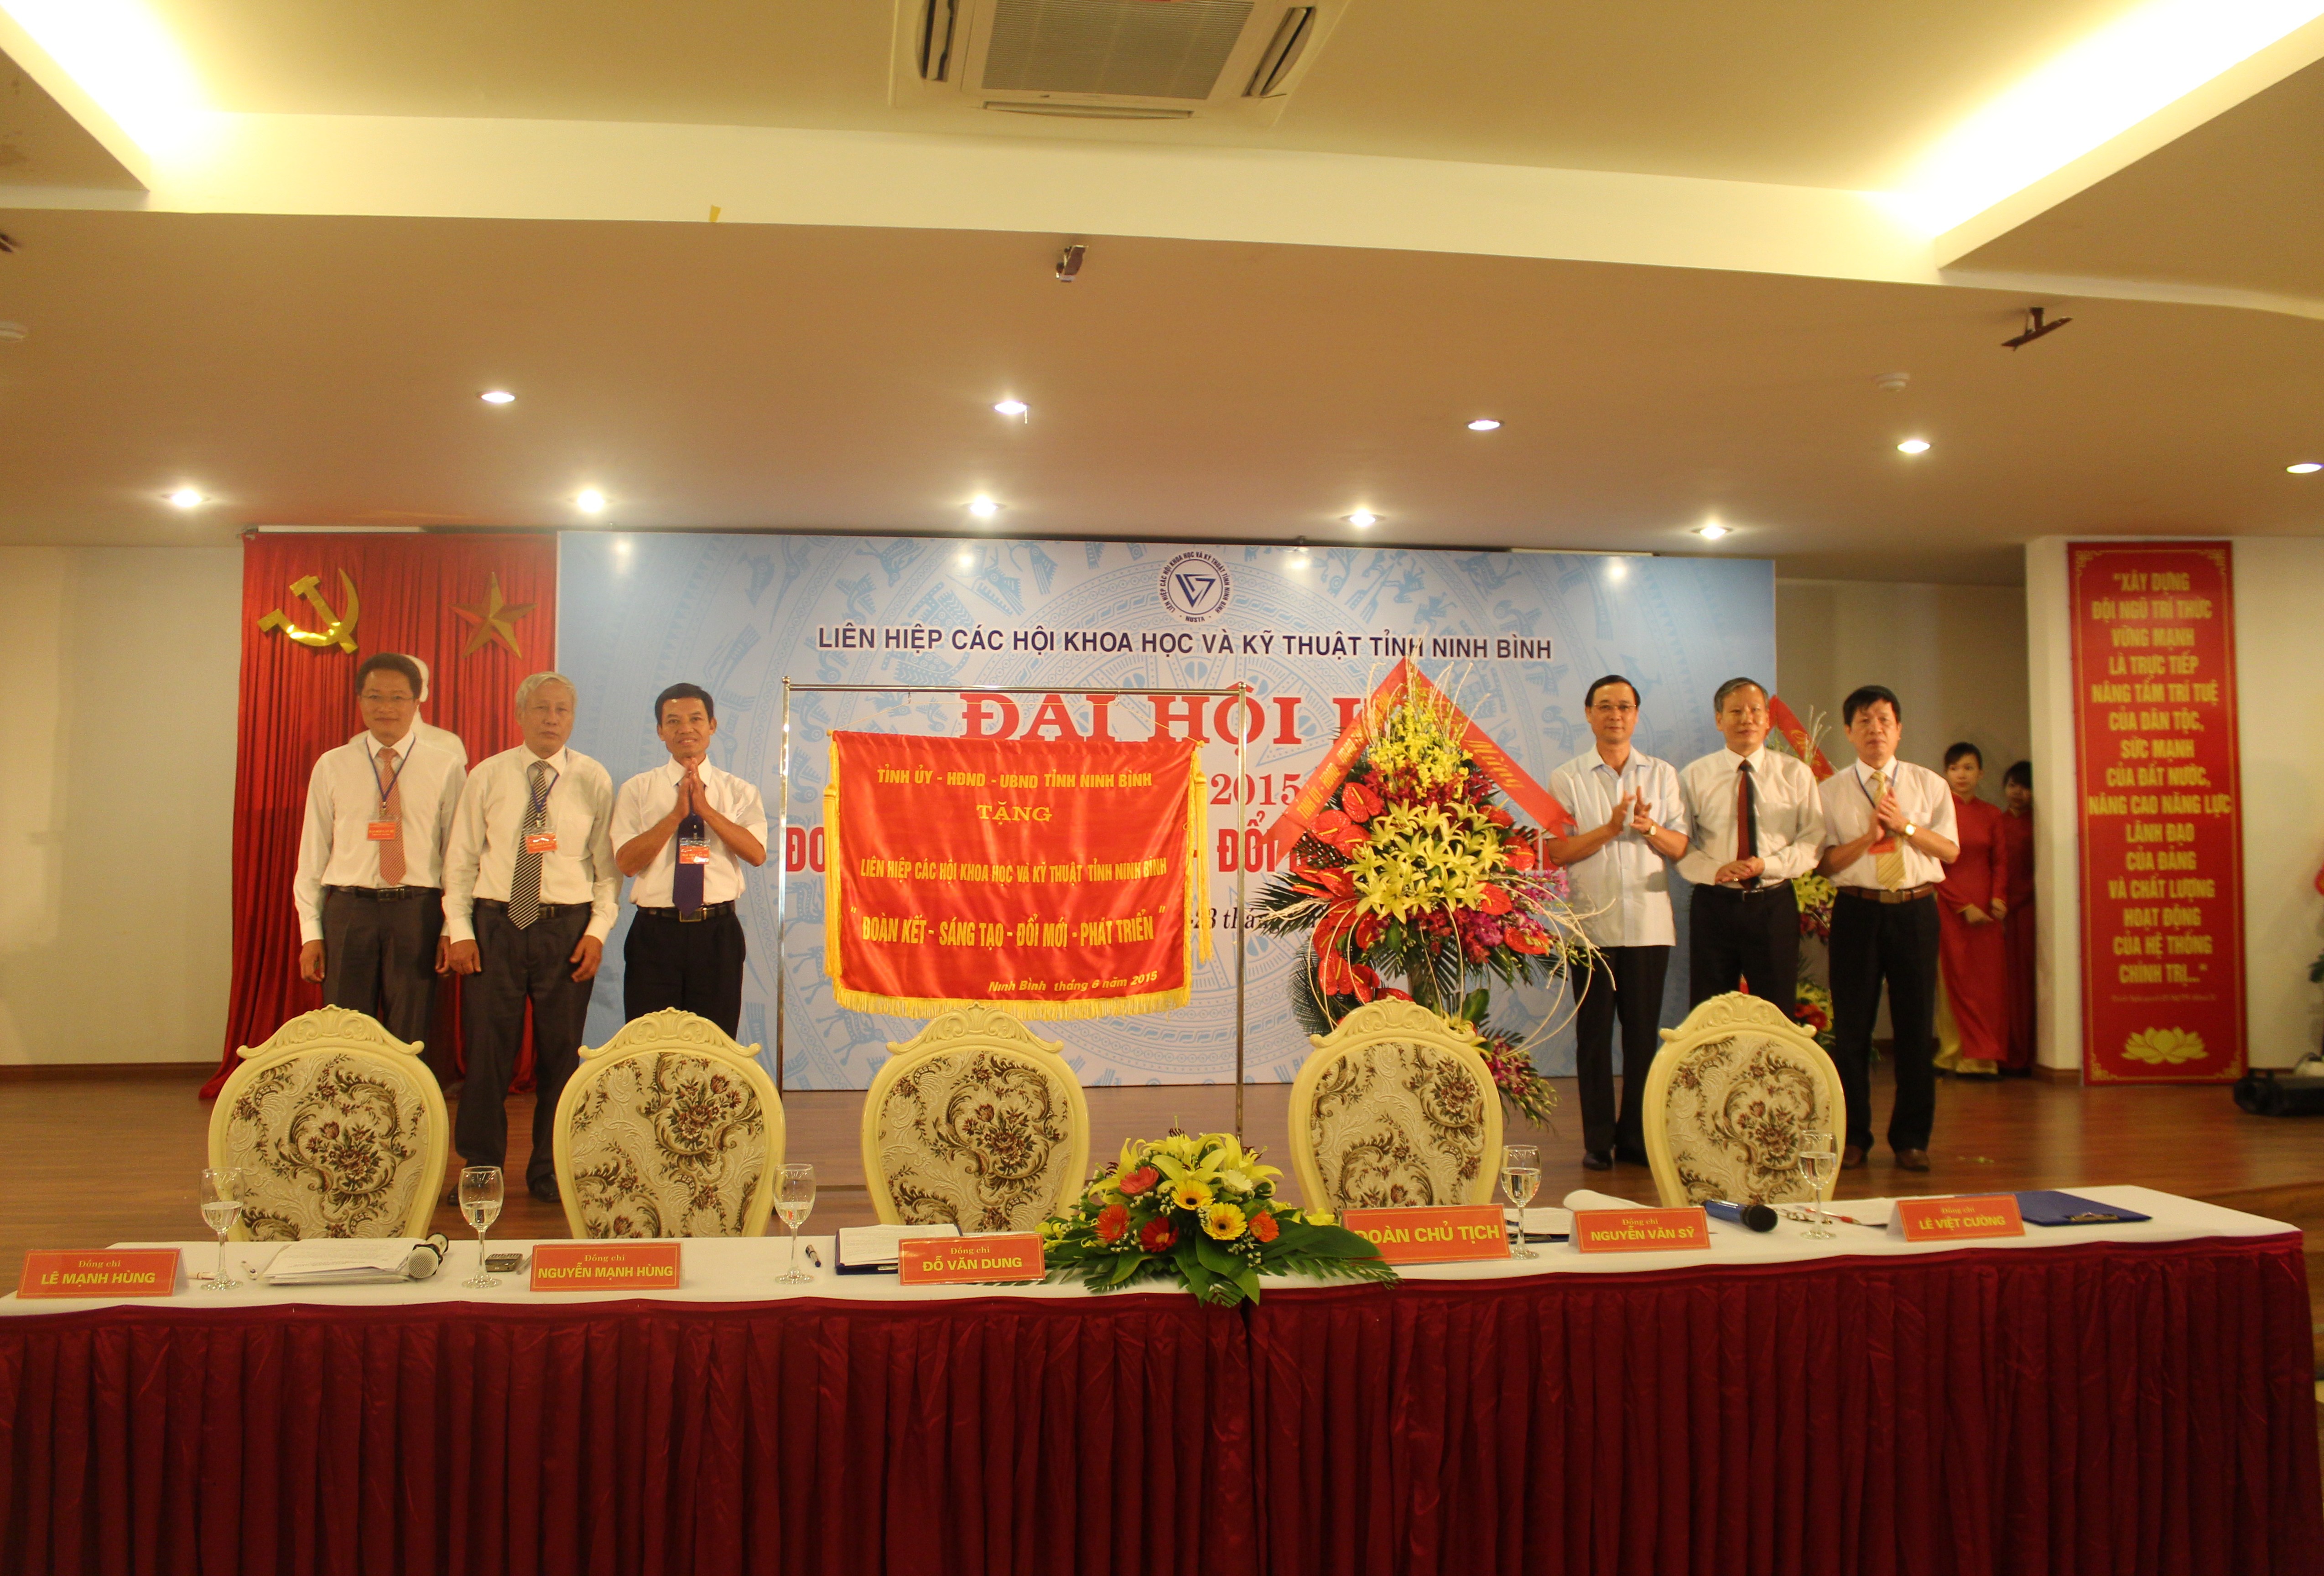 Tổ chức thành công Đại hội Đại biểu Liên hiệp các Hội Khoa học và Kỹ thuật tỉnh Ninh Bình khóa III, nhiệm kỳ 2015-2020